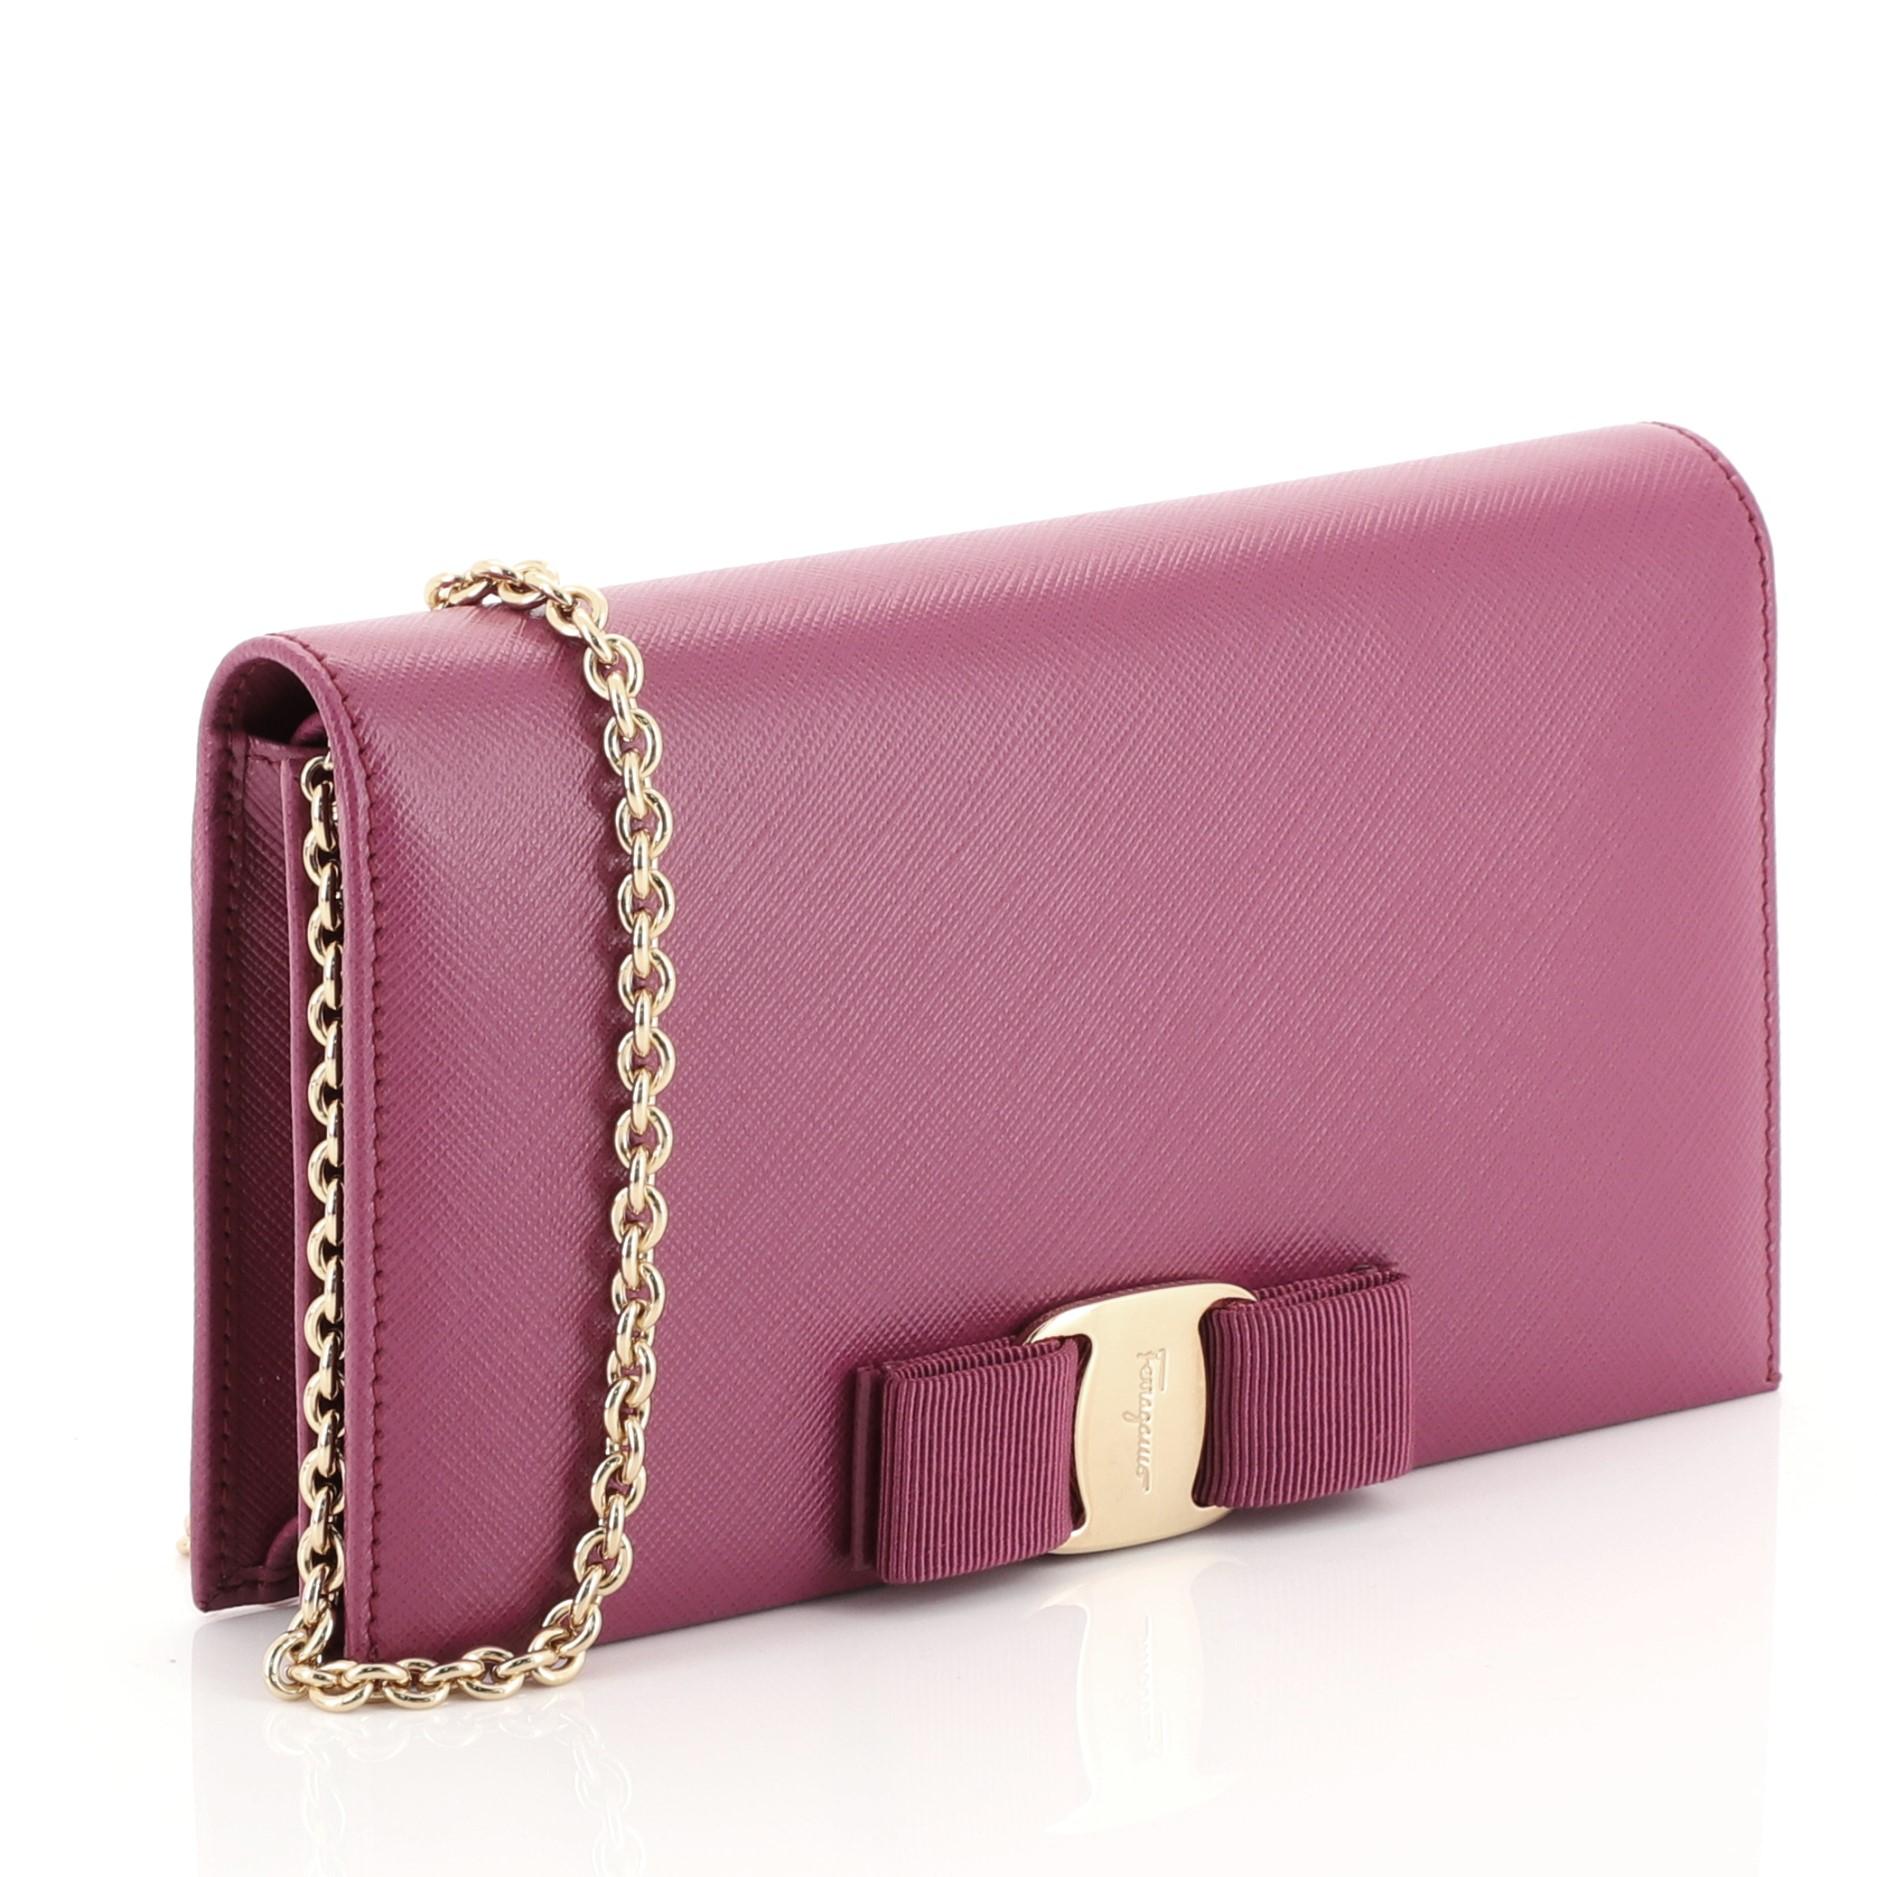 Pink Salvatore Ferragamo Miss Vara Chain Wallet Saffiano Leather 